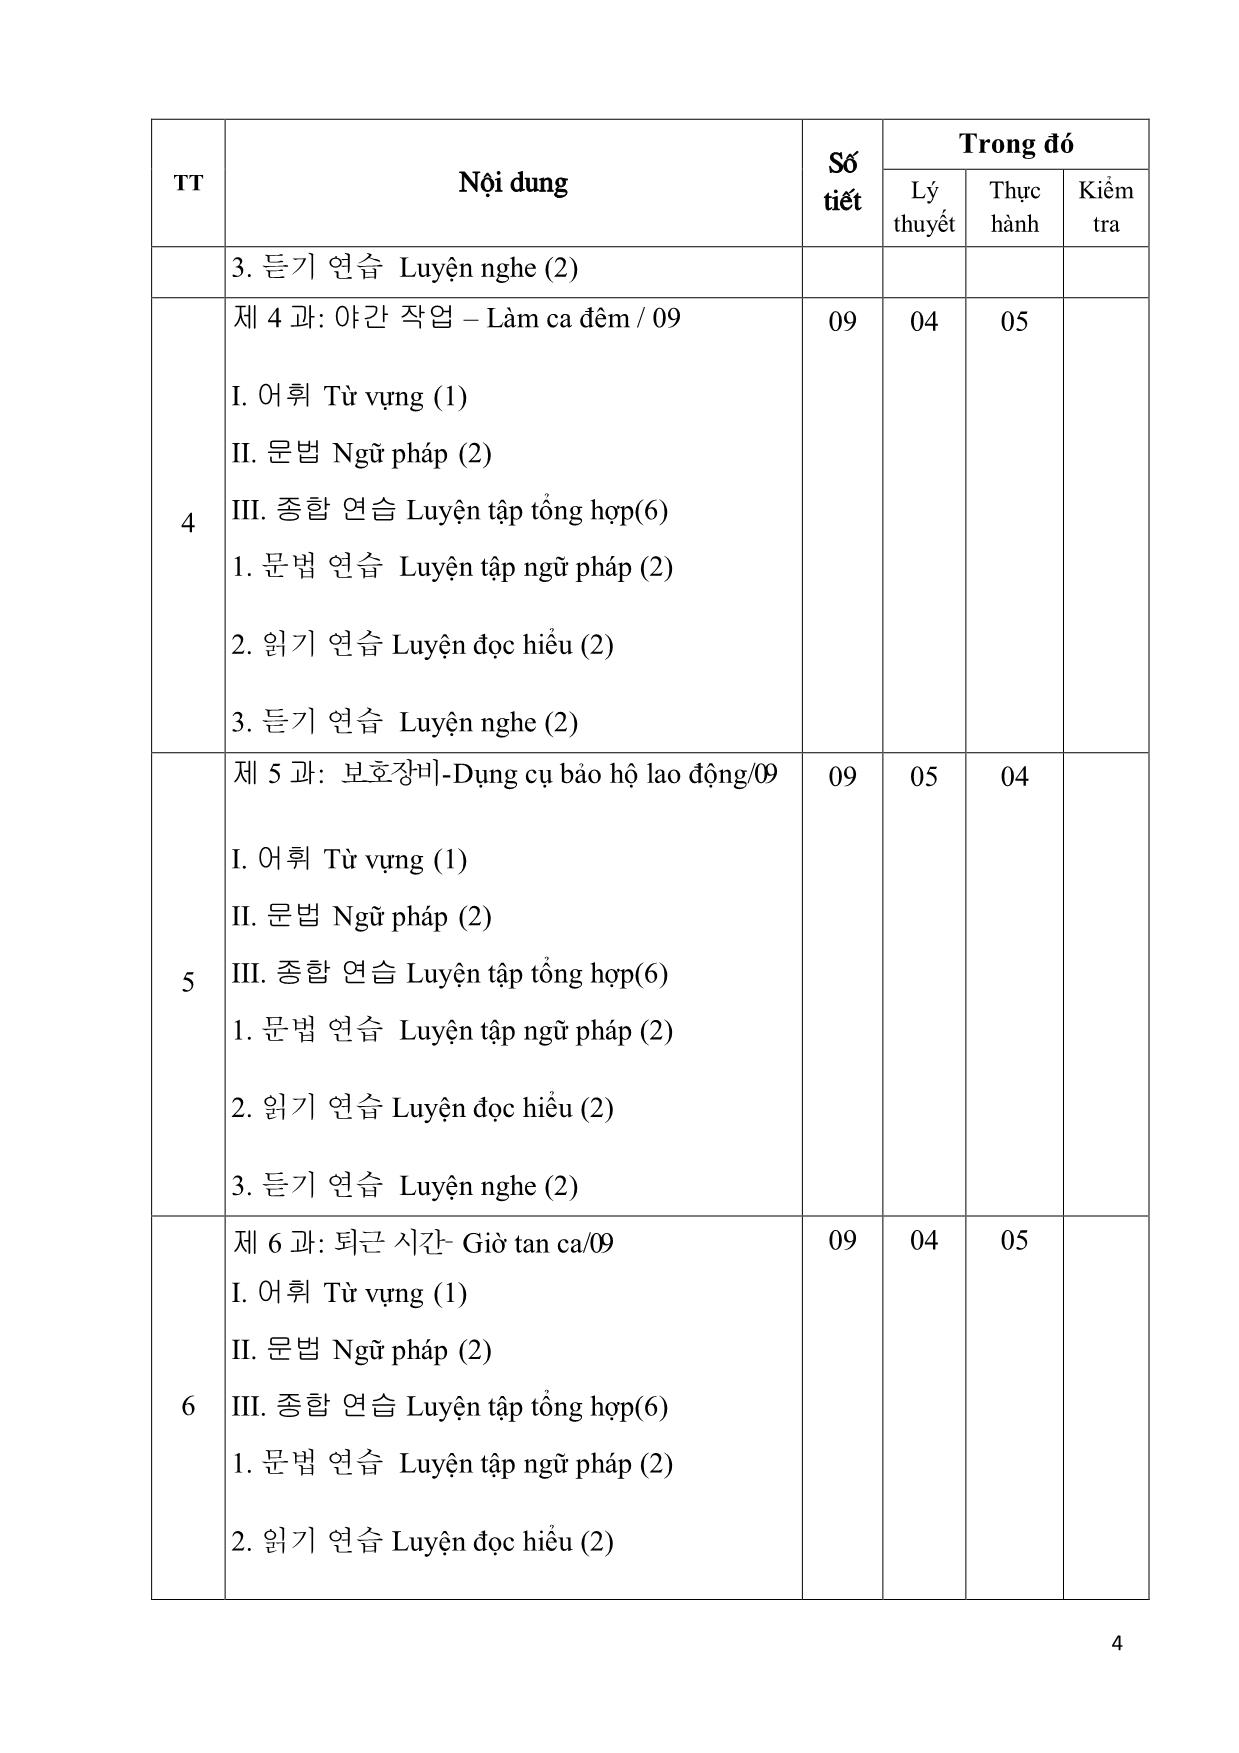 Giáo trình Chương trình tiếng Hàn dùng trong sản xuất chế tạo trang 4